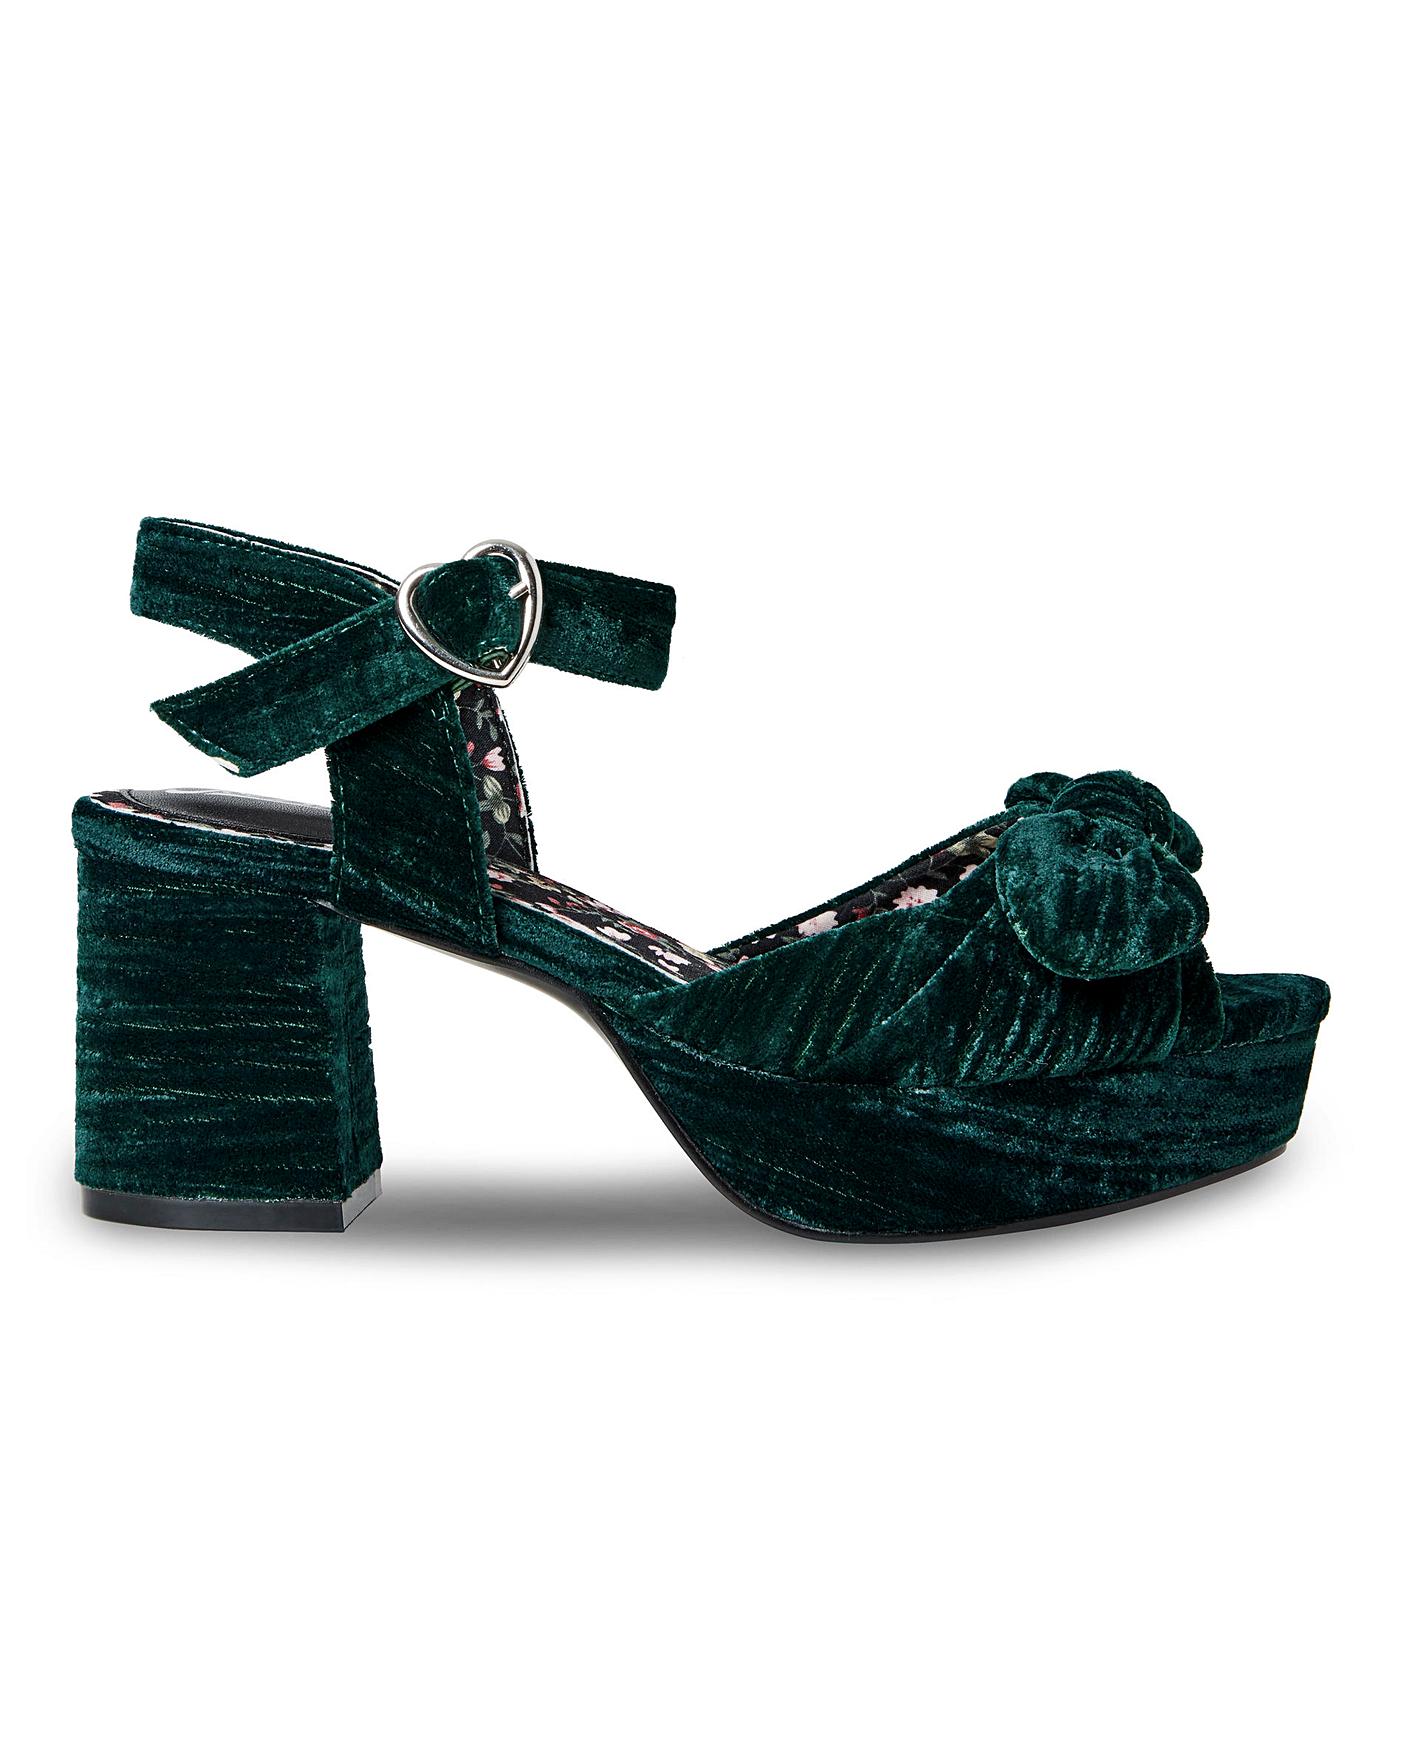 turquoise block heel sandals